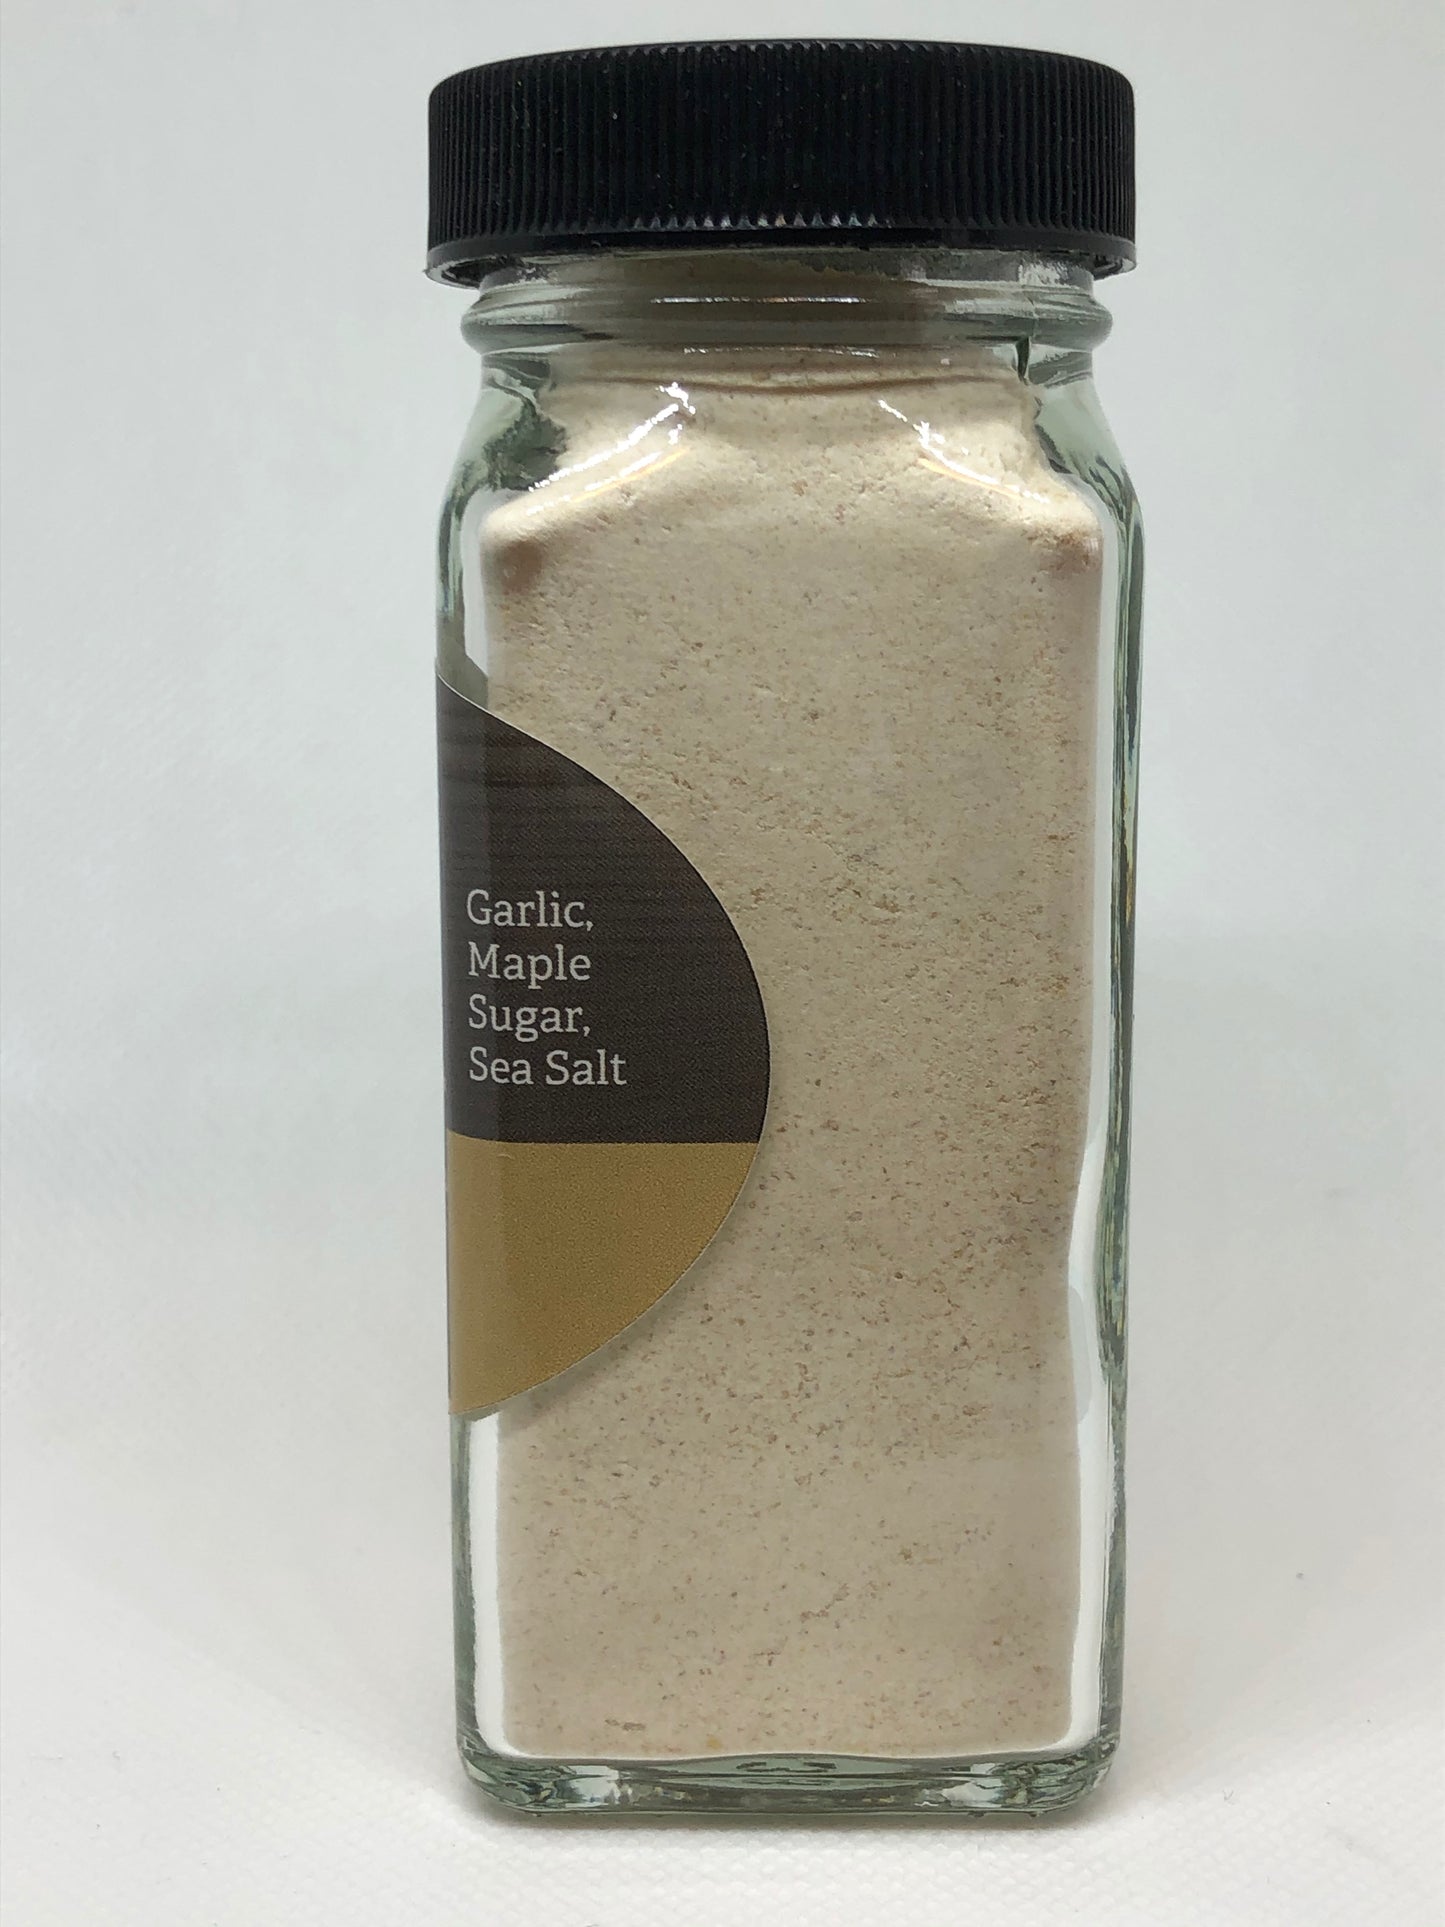 Maple Garlic Powder Large